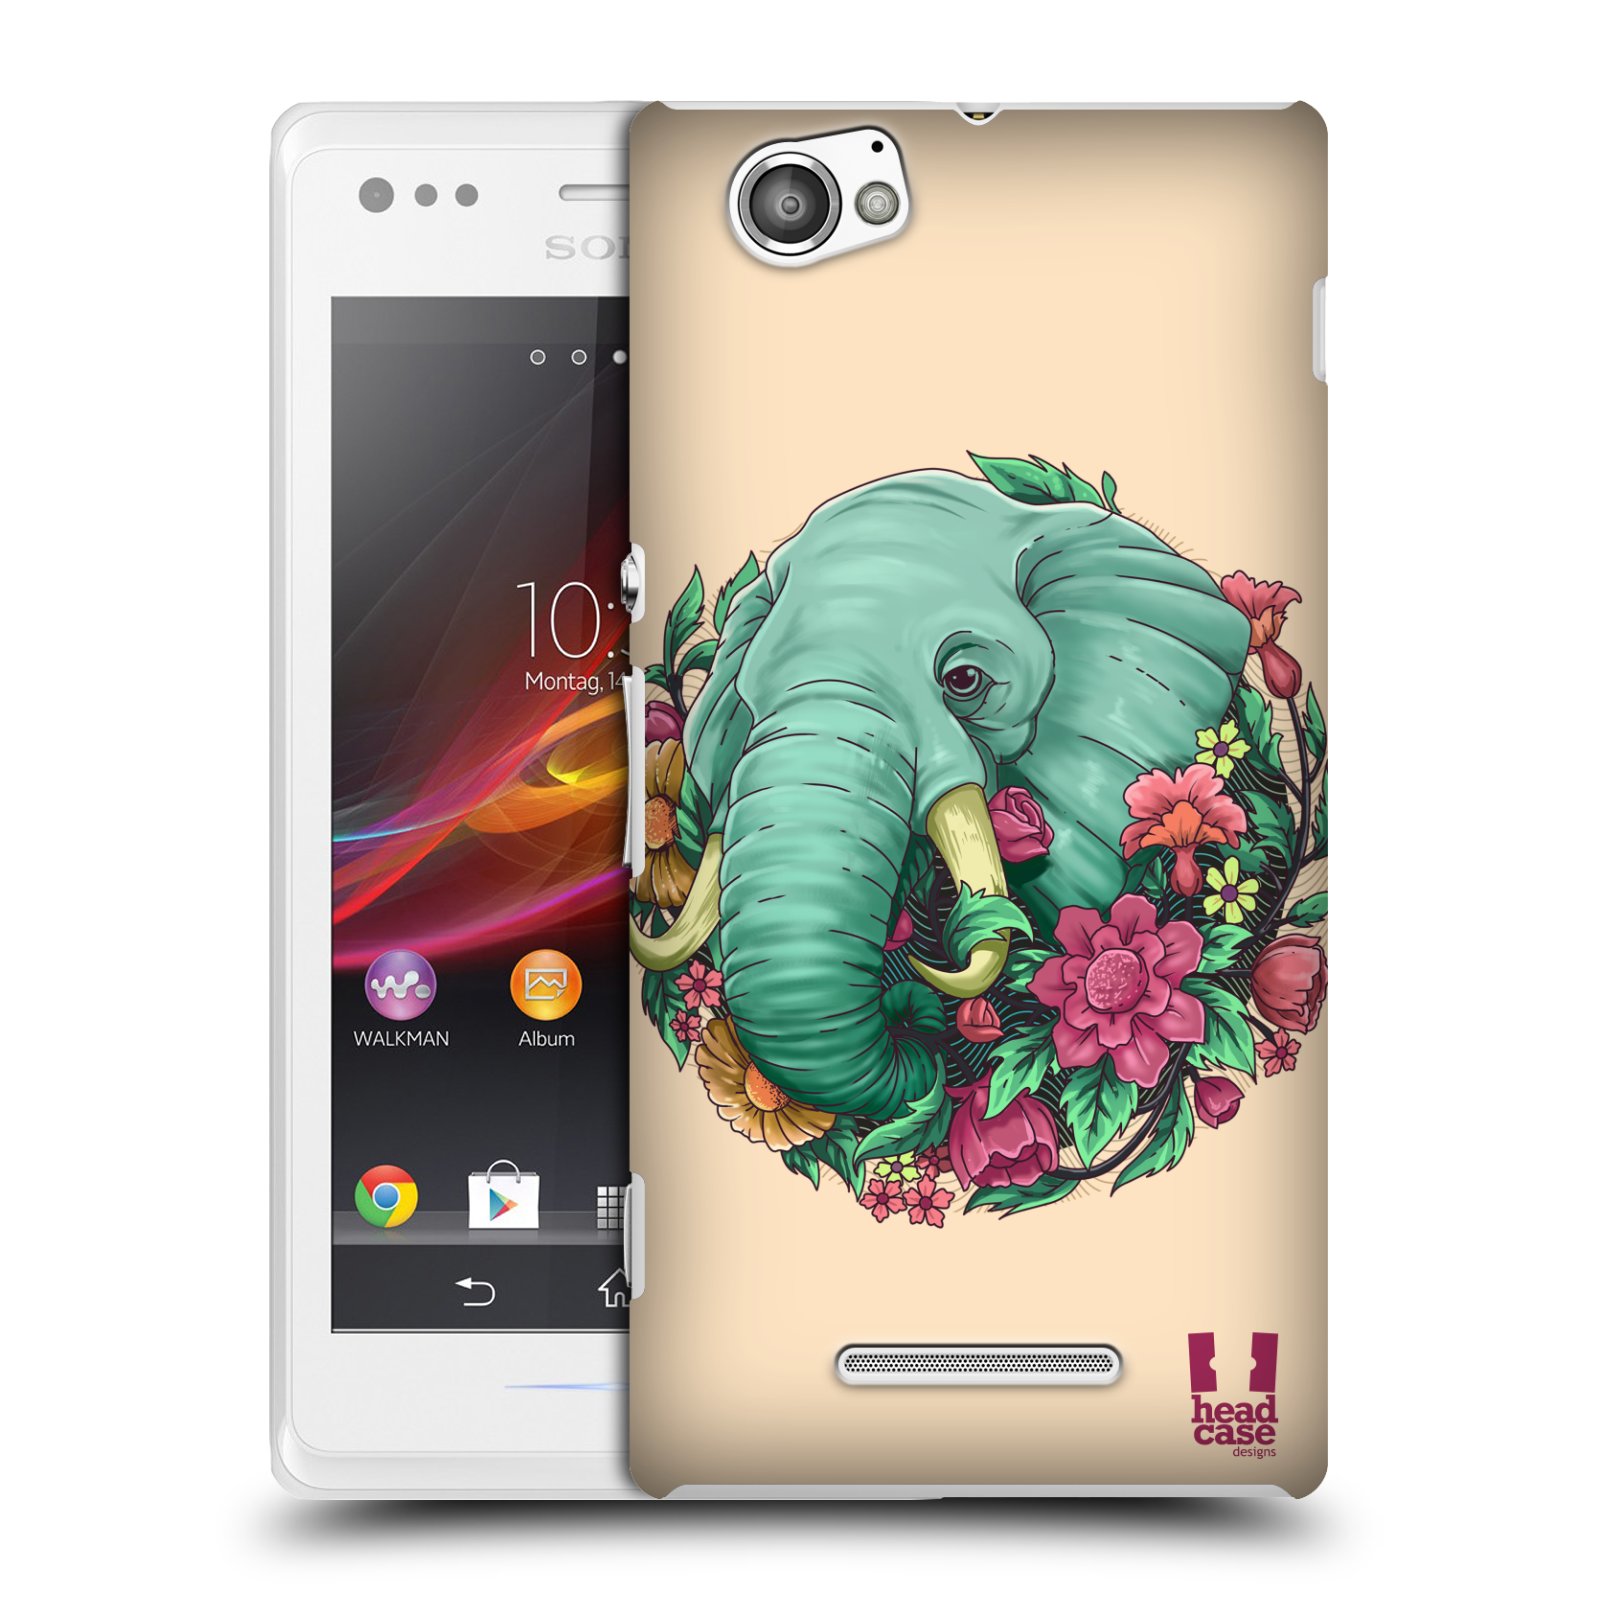 HEAD CASE plastový obal na mobil Sony Xperia M vzor Flóra a Fauna slon